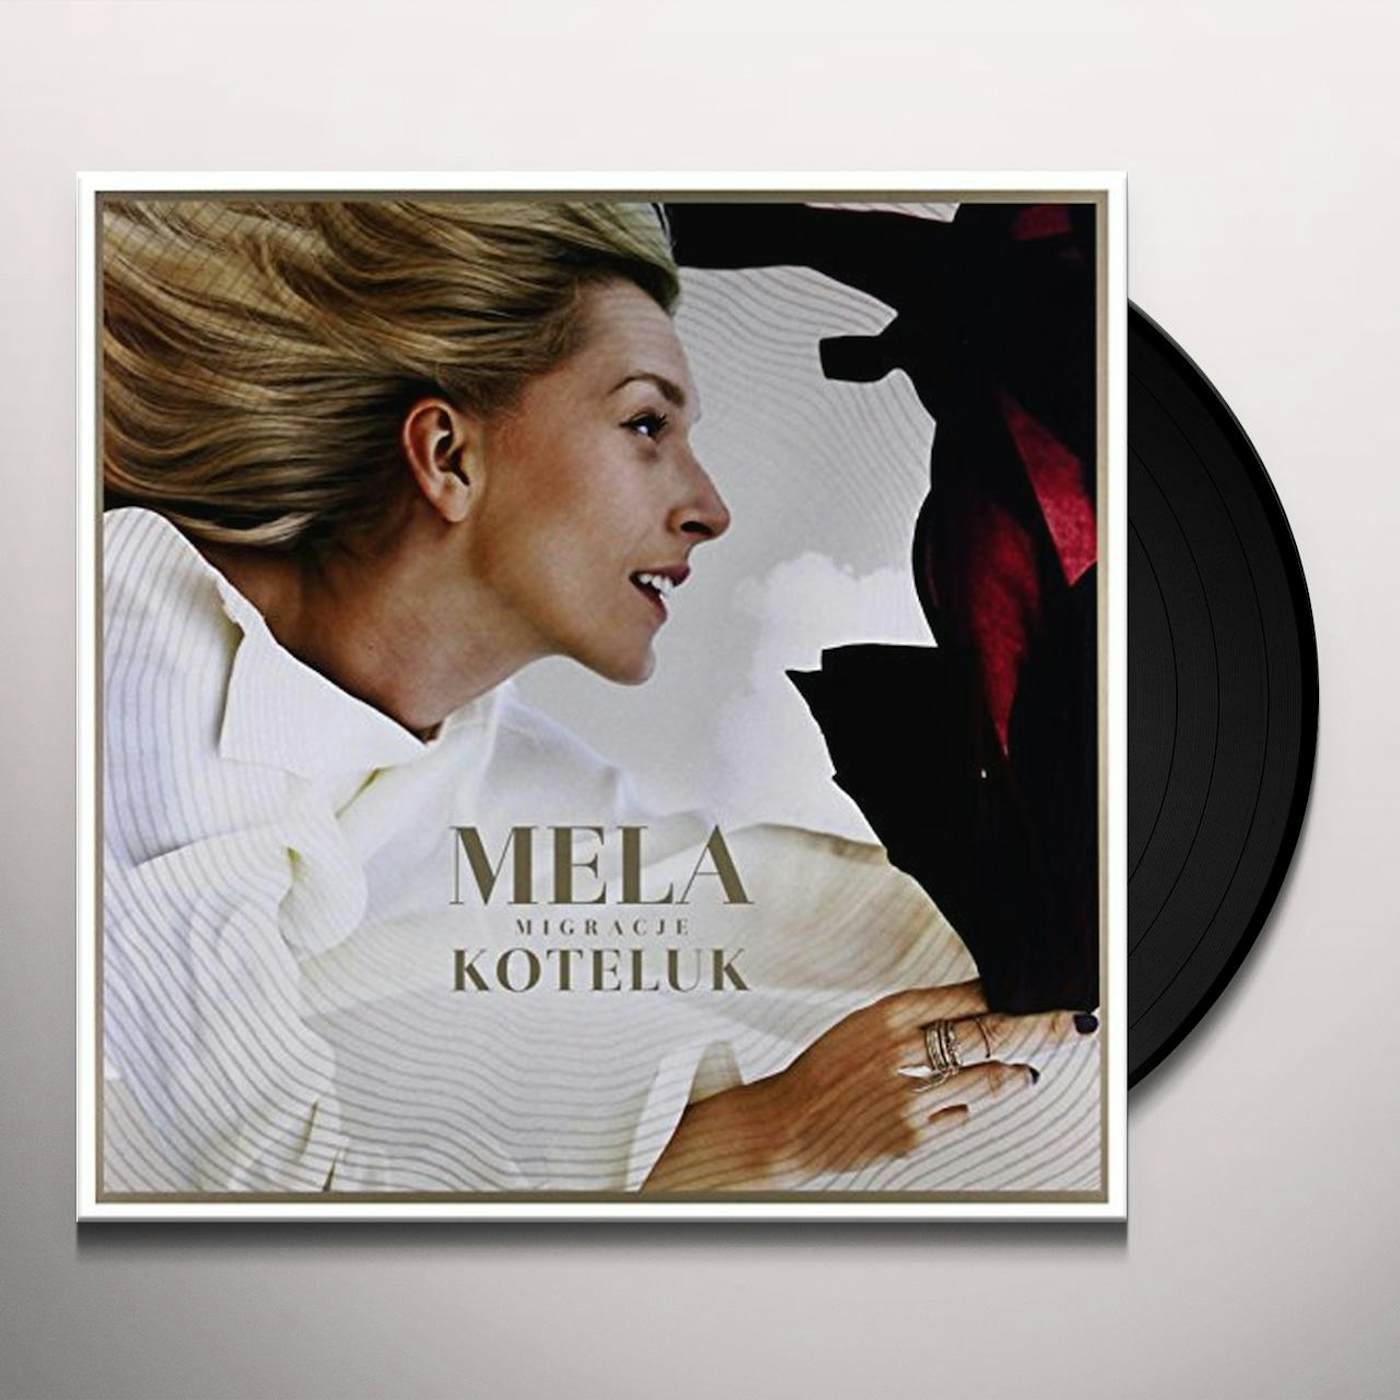 Mela Koteluk Migracje Vinyl Record